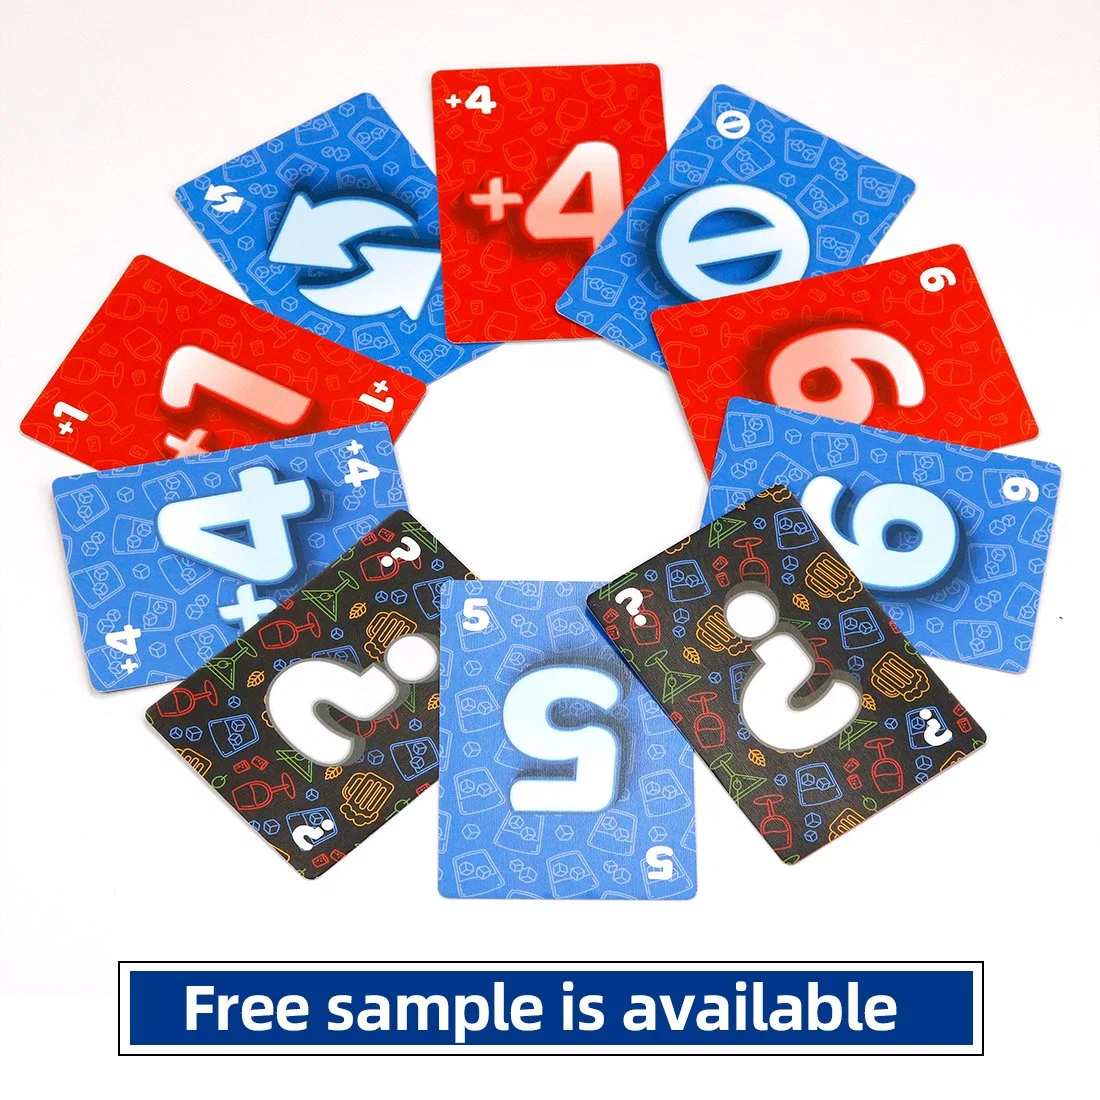 Kostenlose Probe Customized Wunderbare Erstaunliche Kinder Karte Spiel Brettspiel Sätze